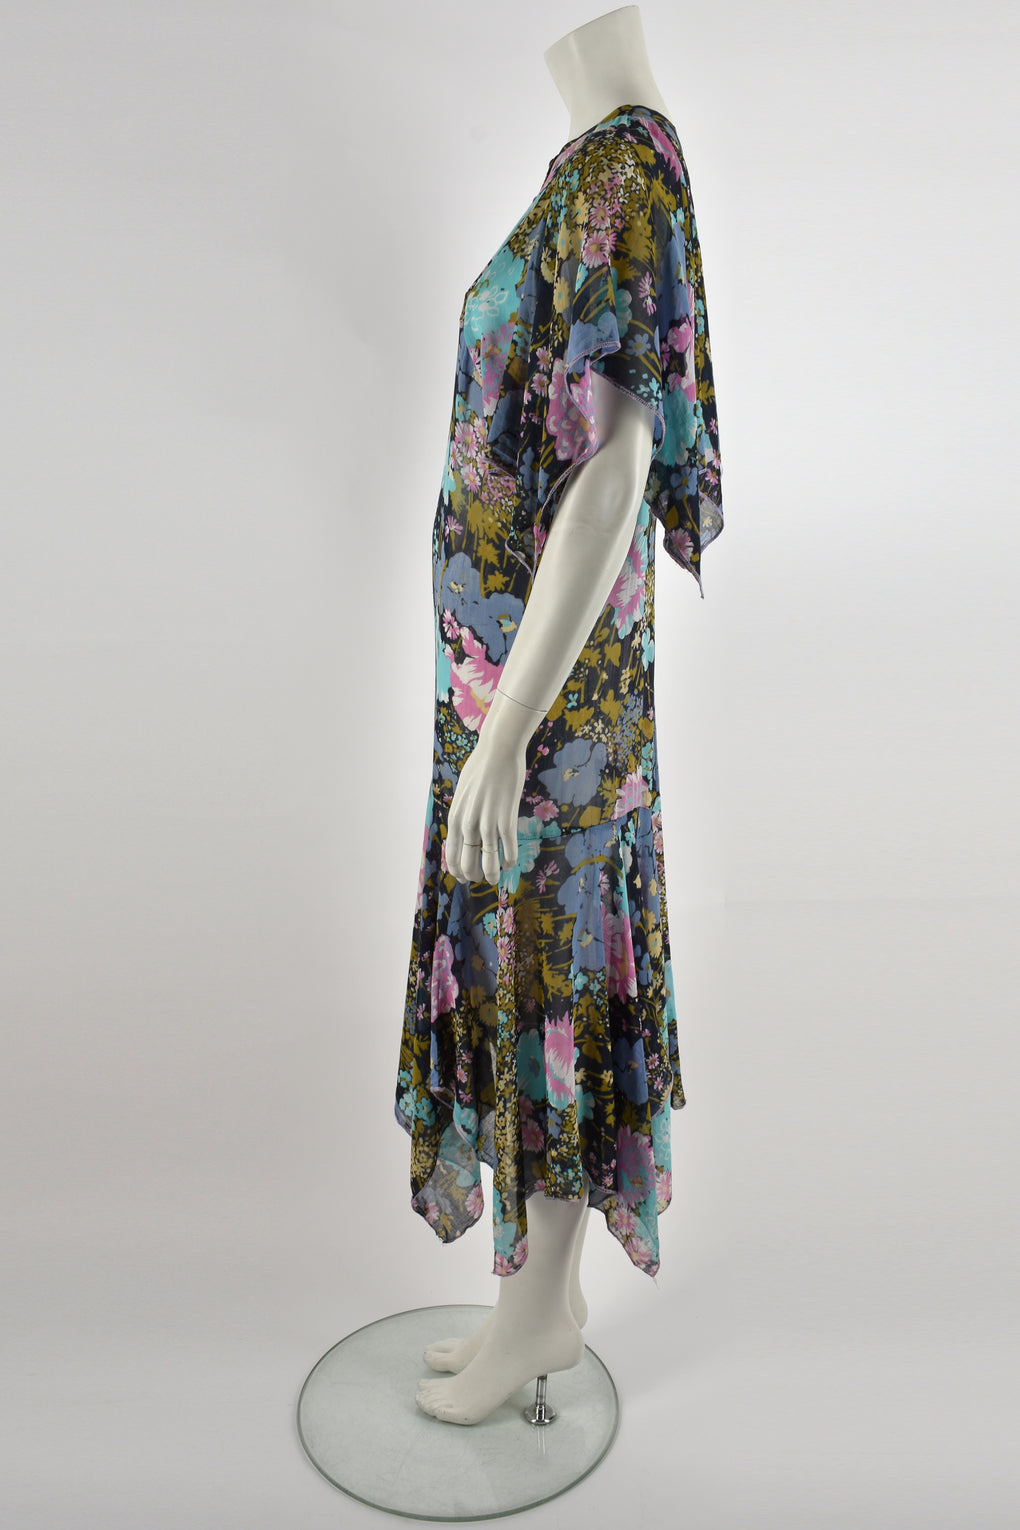 DAVID SILVERMAN 70s floral print dress S